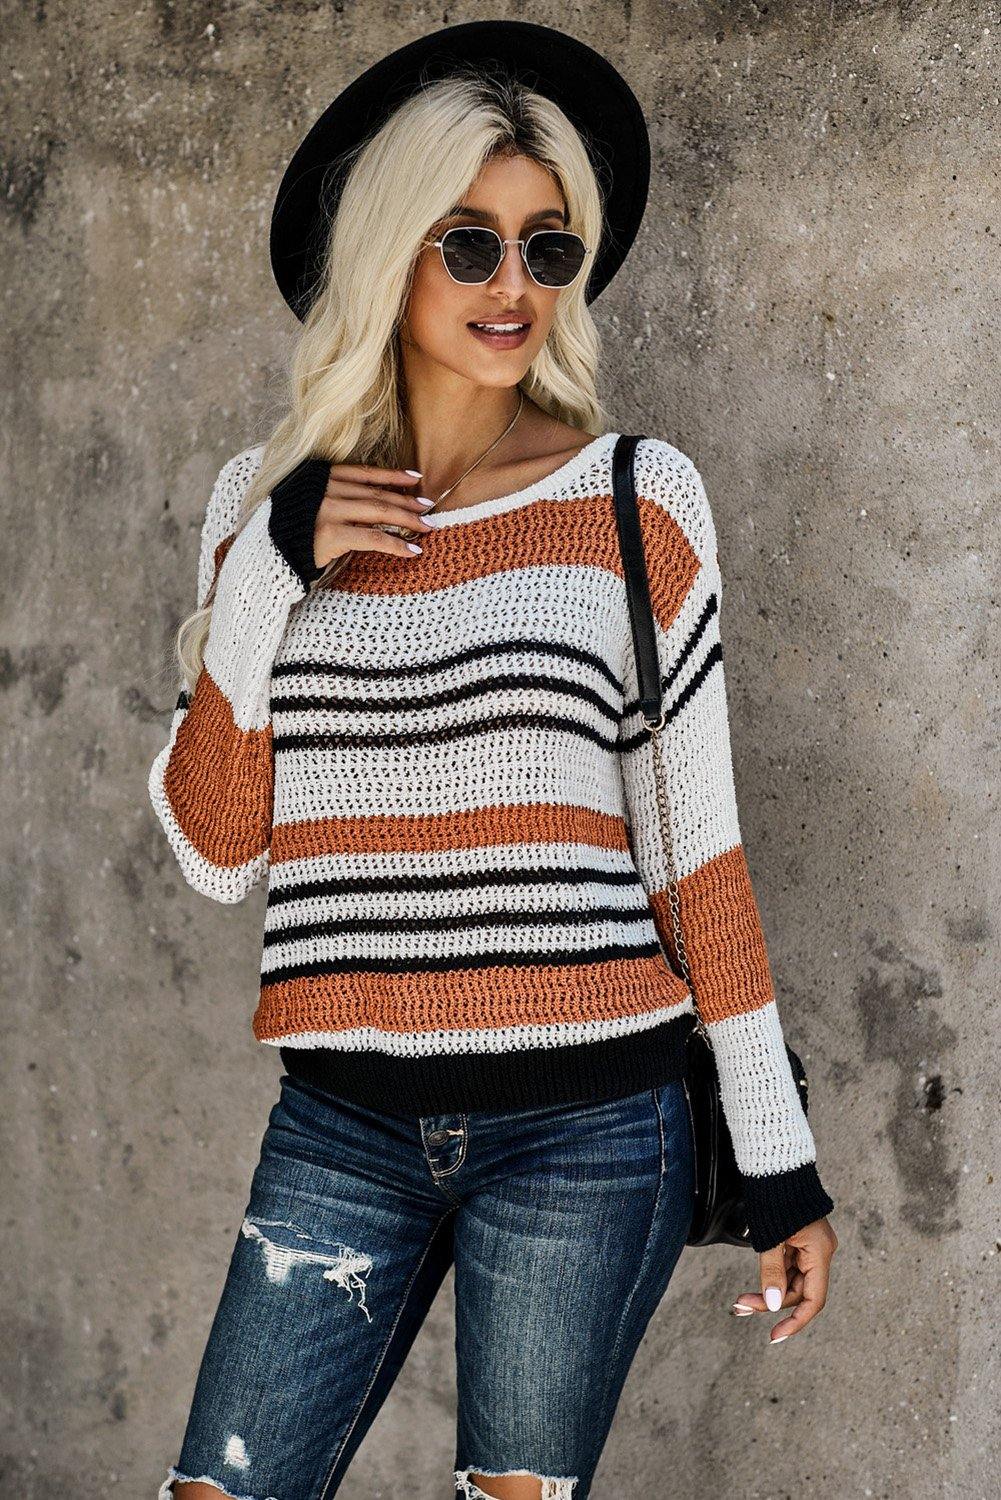 Loose Fit Striped Pattern Sweater - L & M Kee, LLC